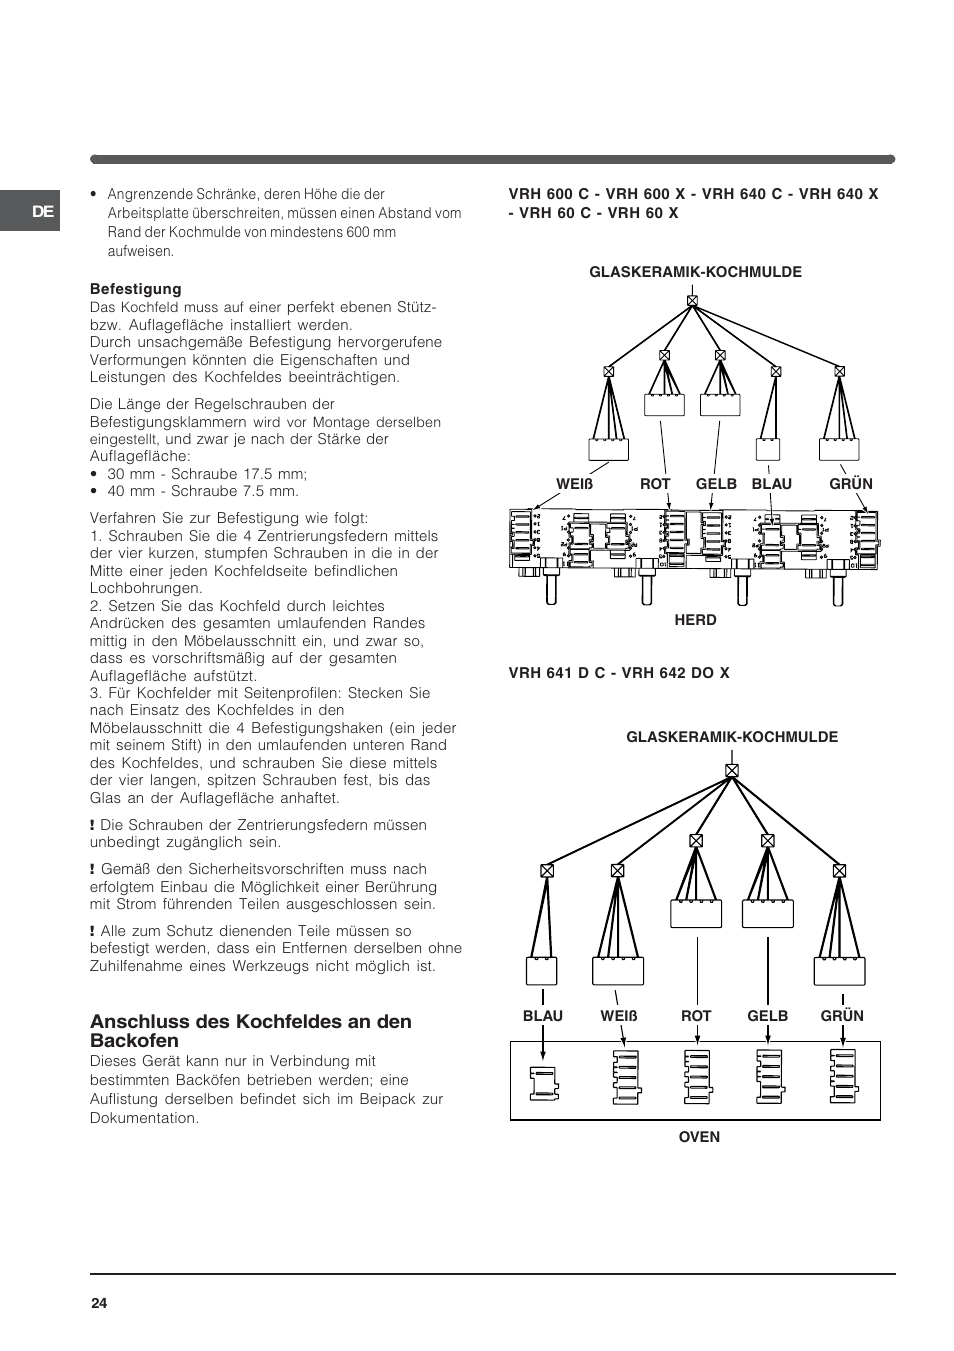 Anschluss des kochfeldes an den backofen | Indesit VRH 600 X EU User Manual  | Page 24 / 36